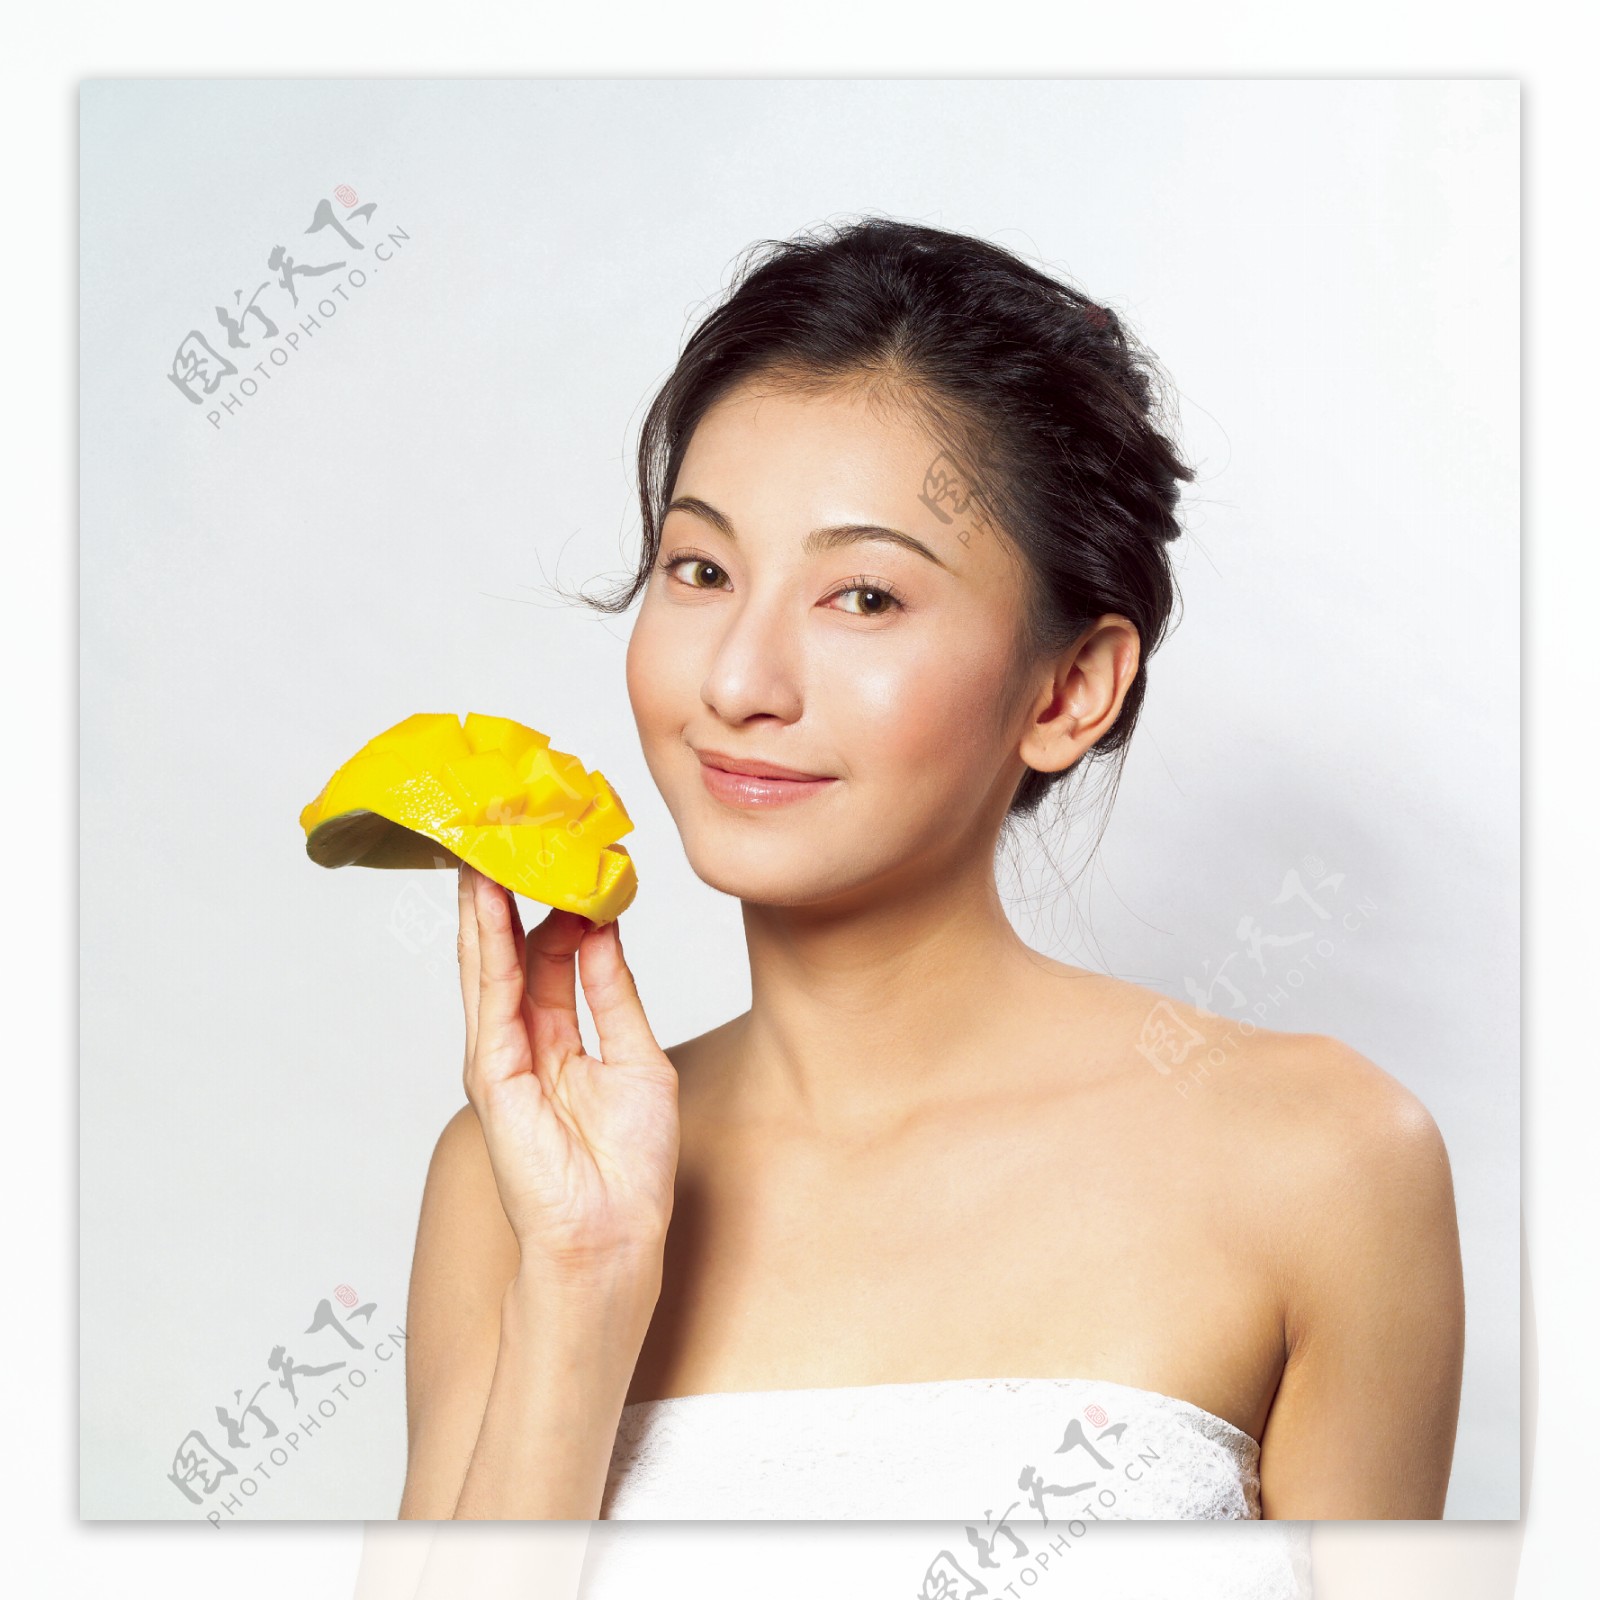 吃芒果的性感美女图片